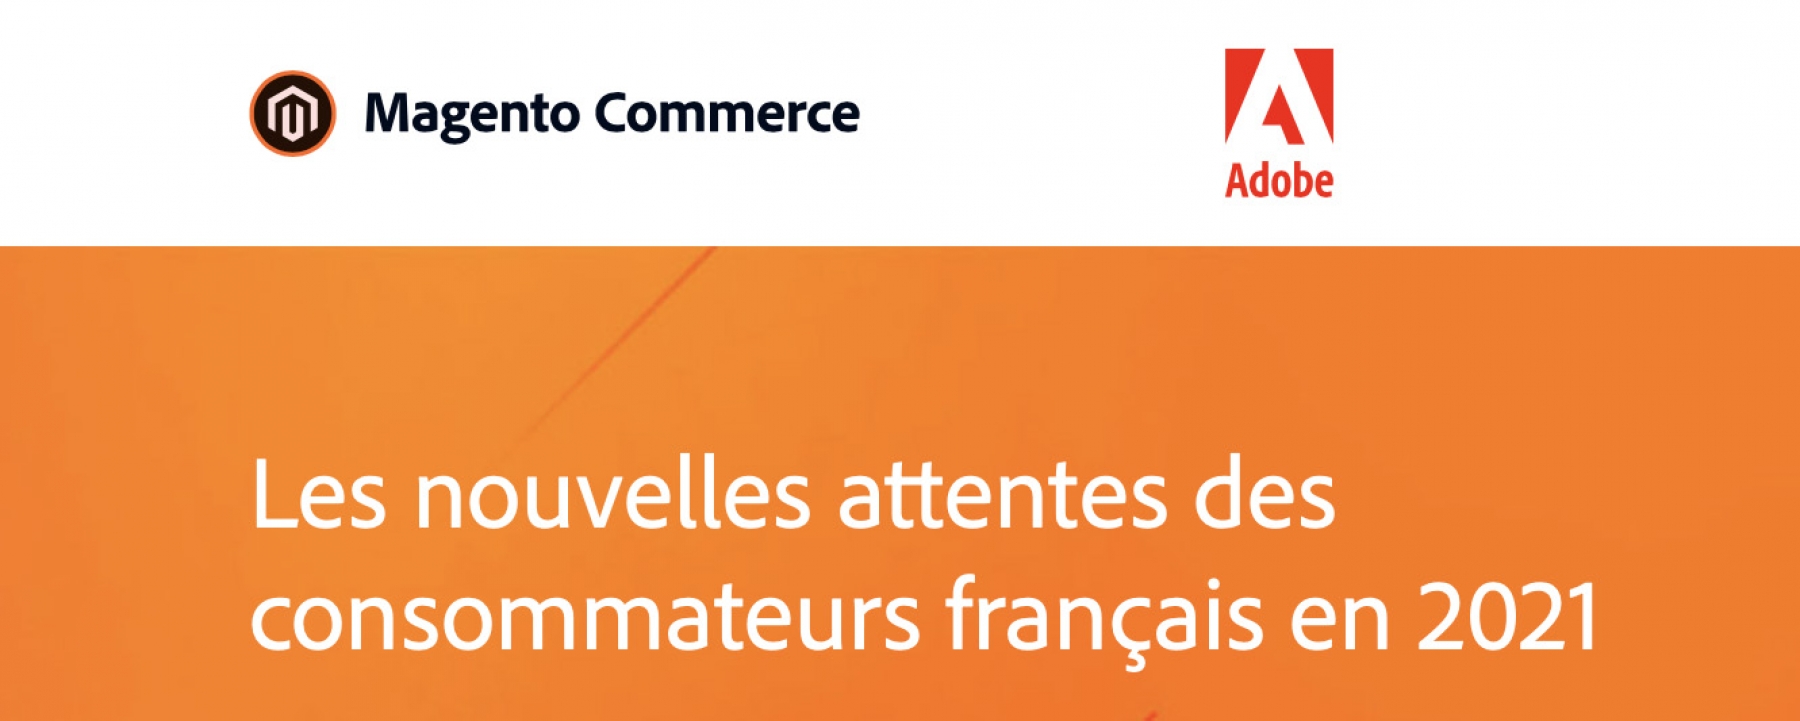 Les nouvelles attentes des consommateurs français en 2021, un webinar par Magento by Adobe le 15 avril